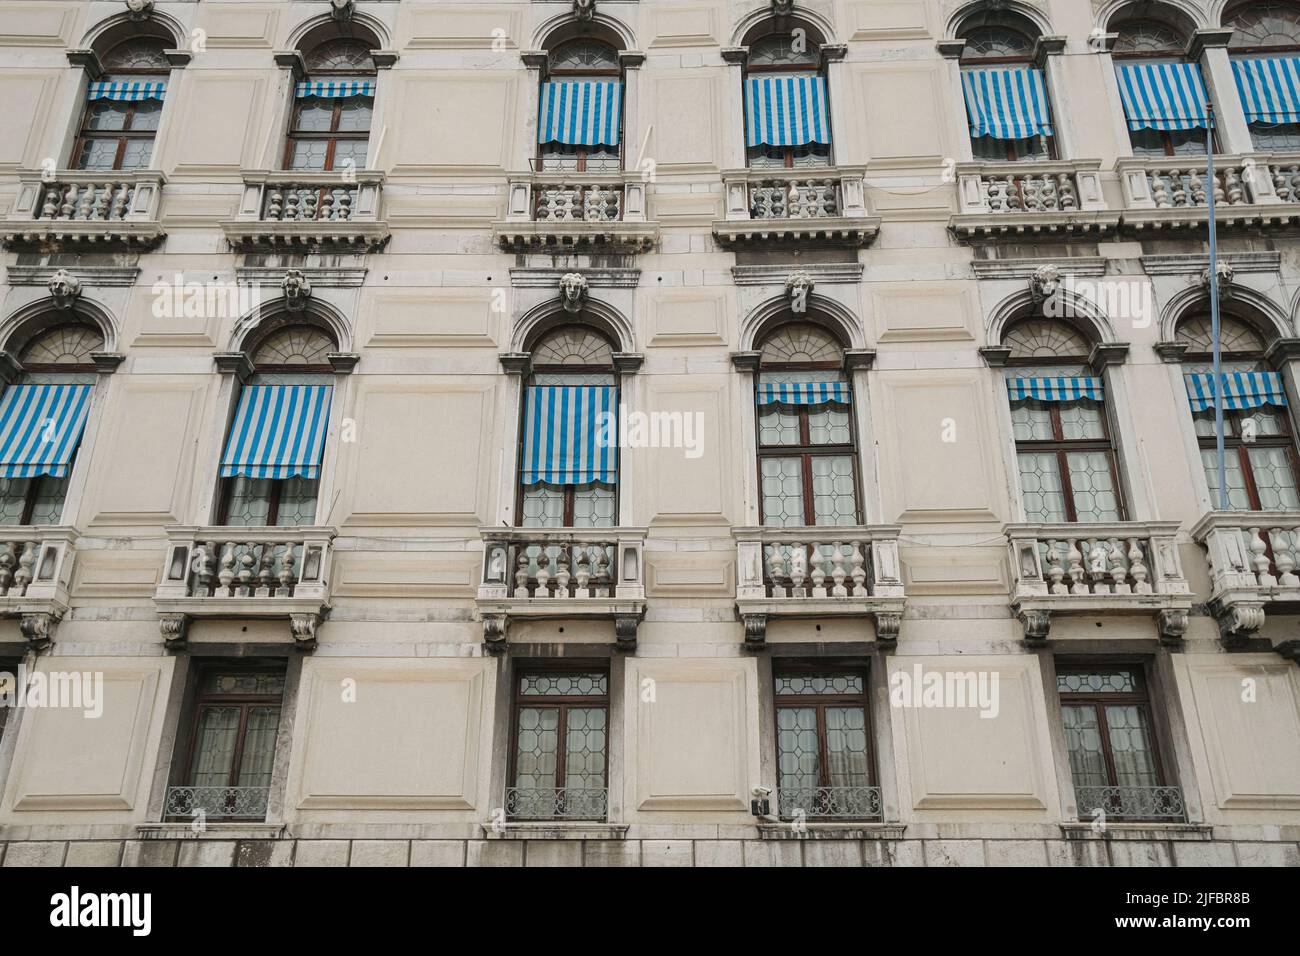 Le tradizionali finestre gotiche si affacciano sul vecchio edificio del centro storico di Venezia, monumenti architettonici italiani Foto Stock